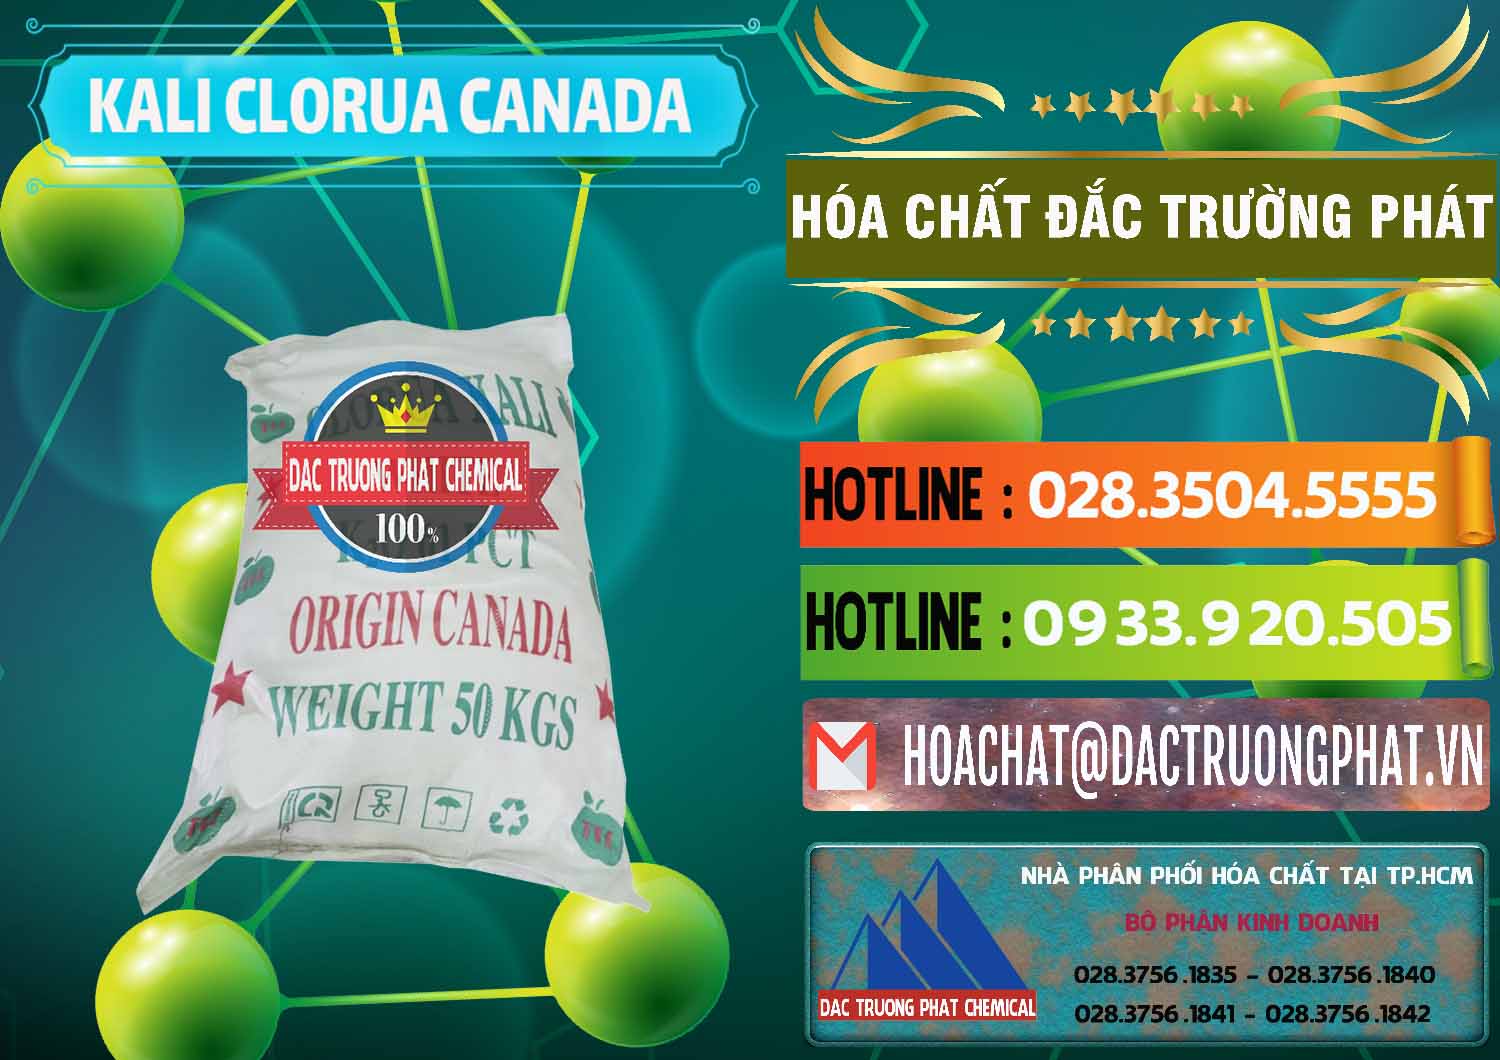 Chuyên bán ( cung cấp ) KCL – Kali Clorua Trắng Canada - 0437 - Đơn vị chuyên kinh doanh ( phân phối ) hóa chất tại TP.HCM - cungcaphoachat.com.vn